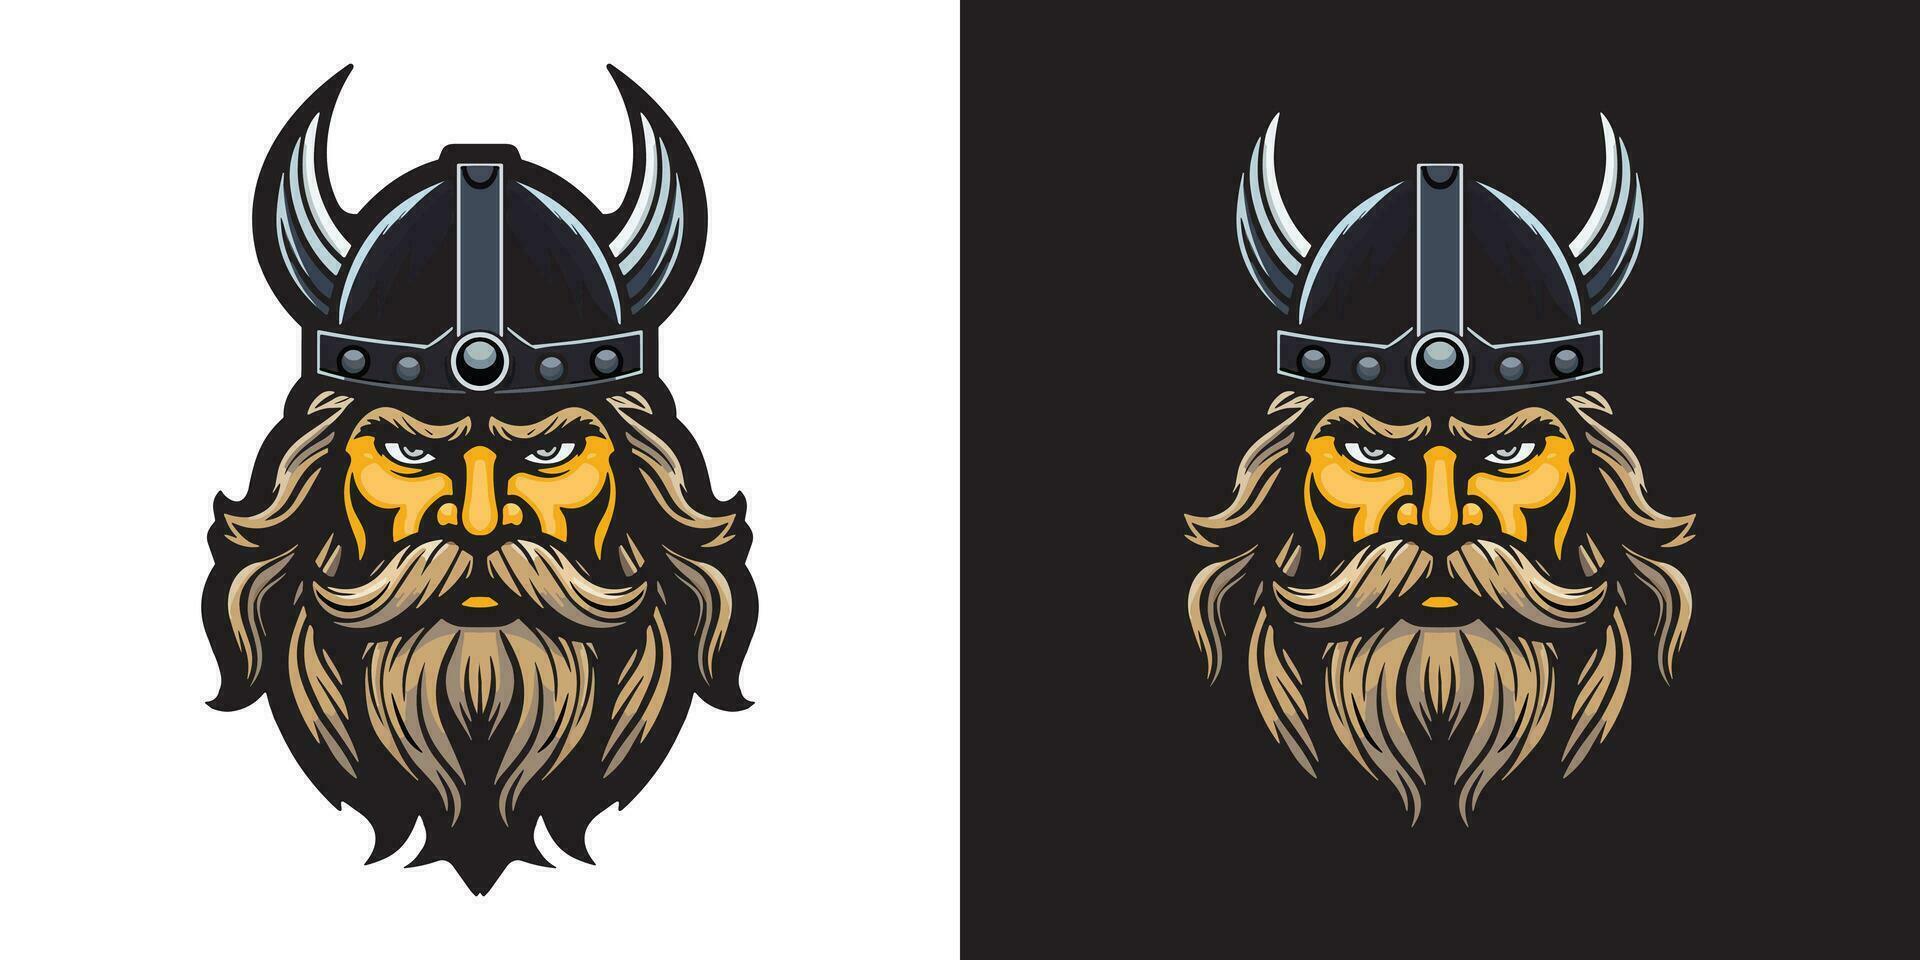 Viking warrior head logo symbol, vector illustration template